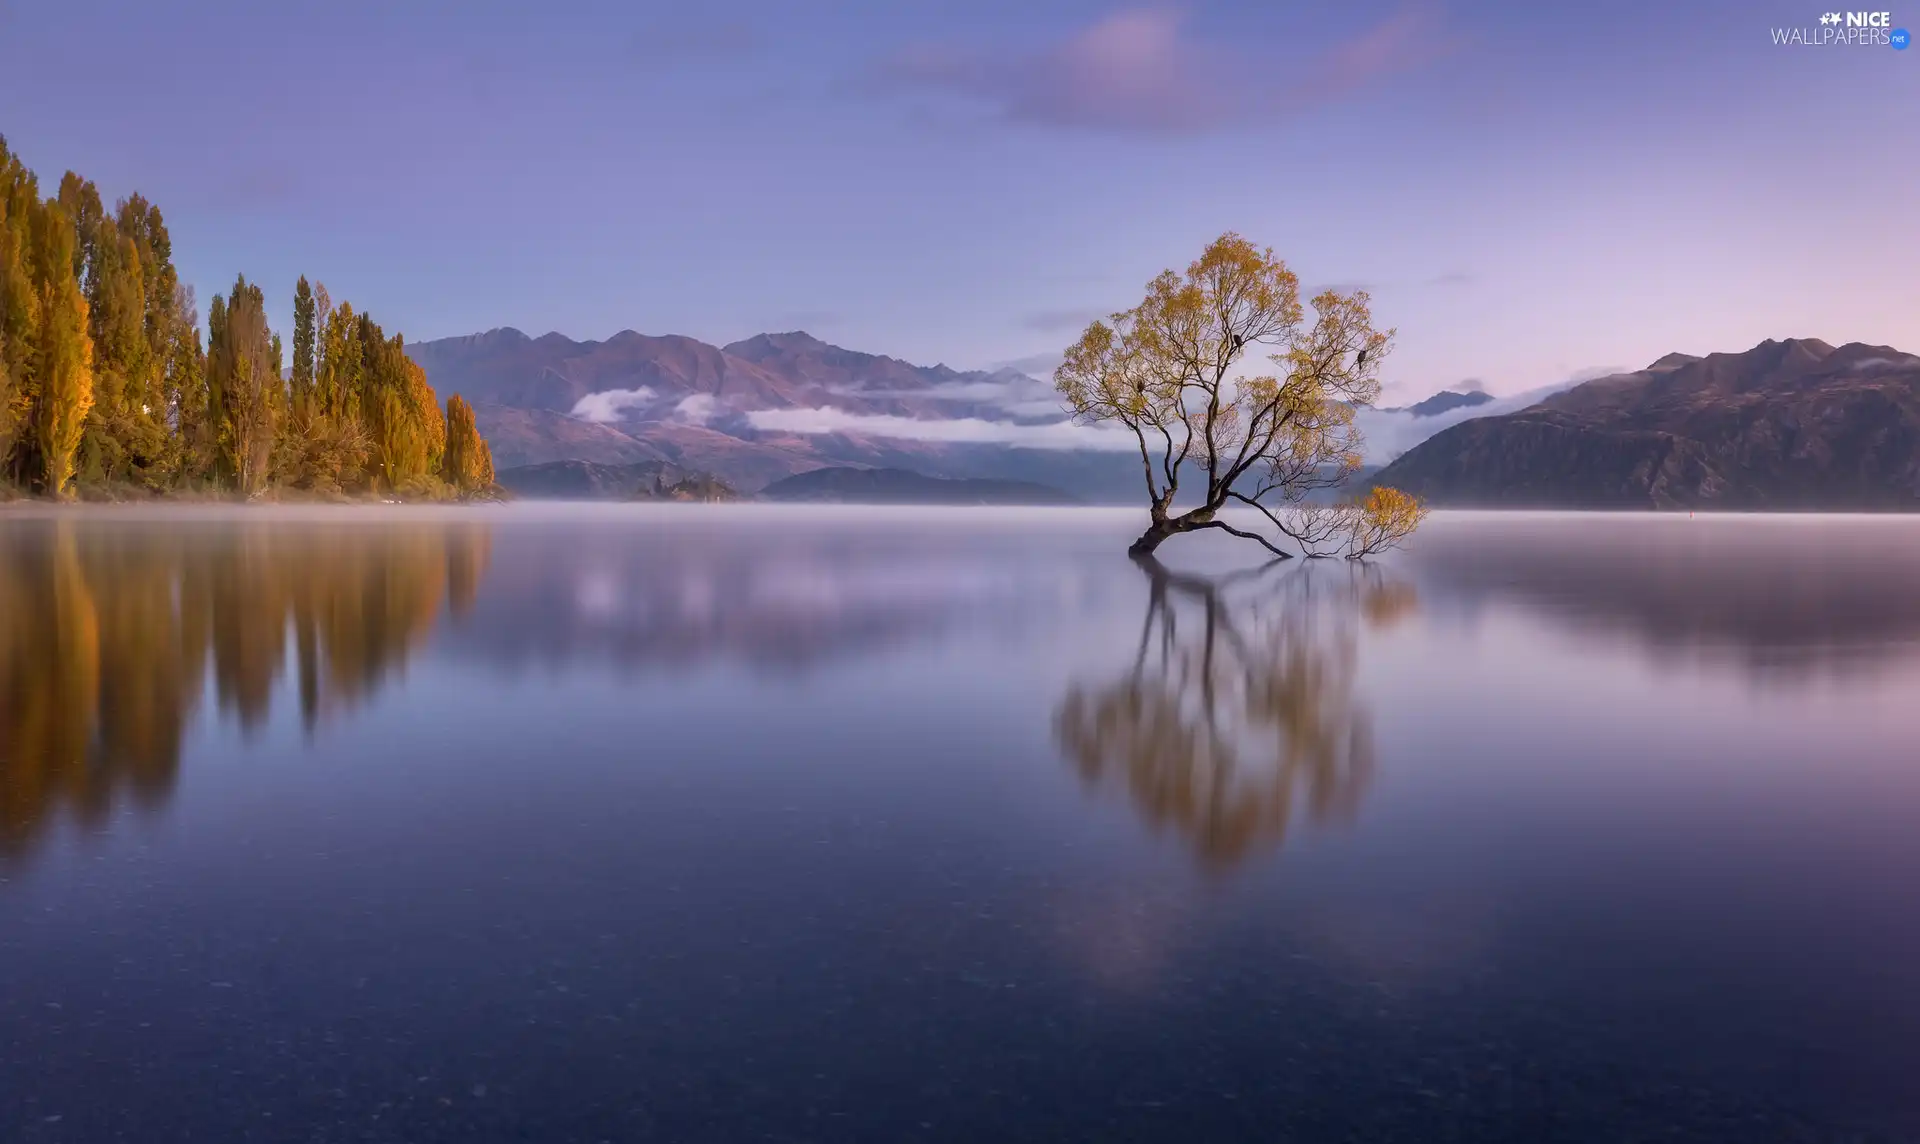 Mountains, Wanaka Lake, reflection, New Zeland, autumn, trees